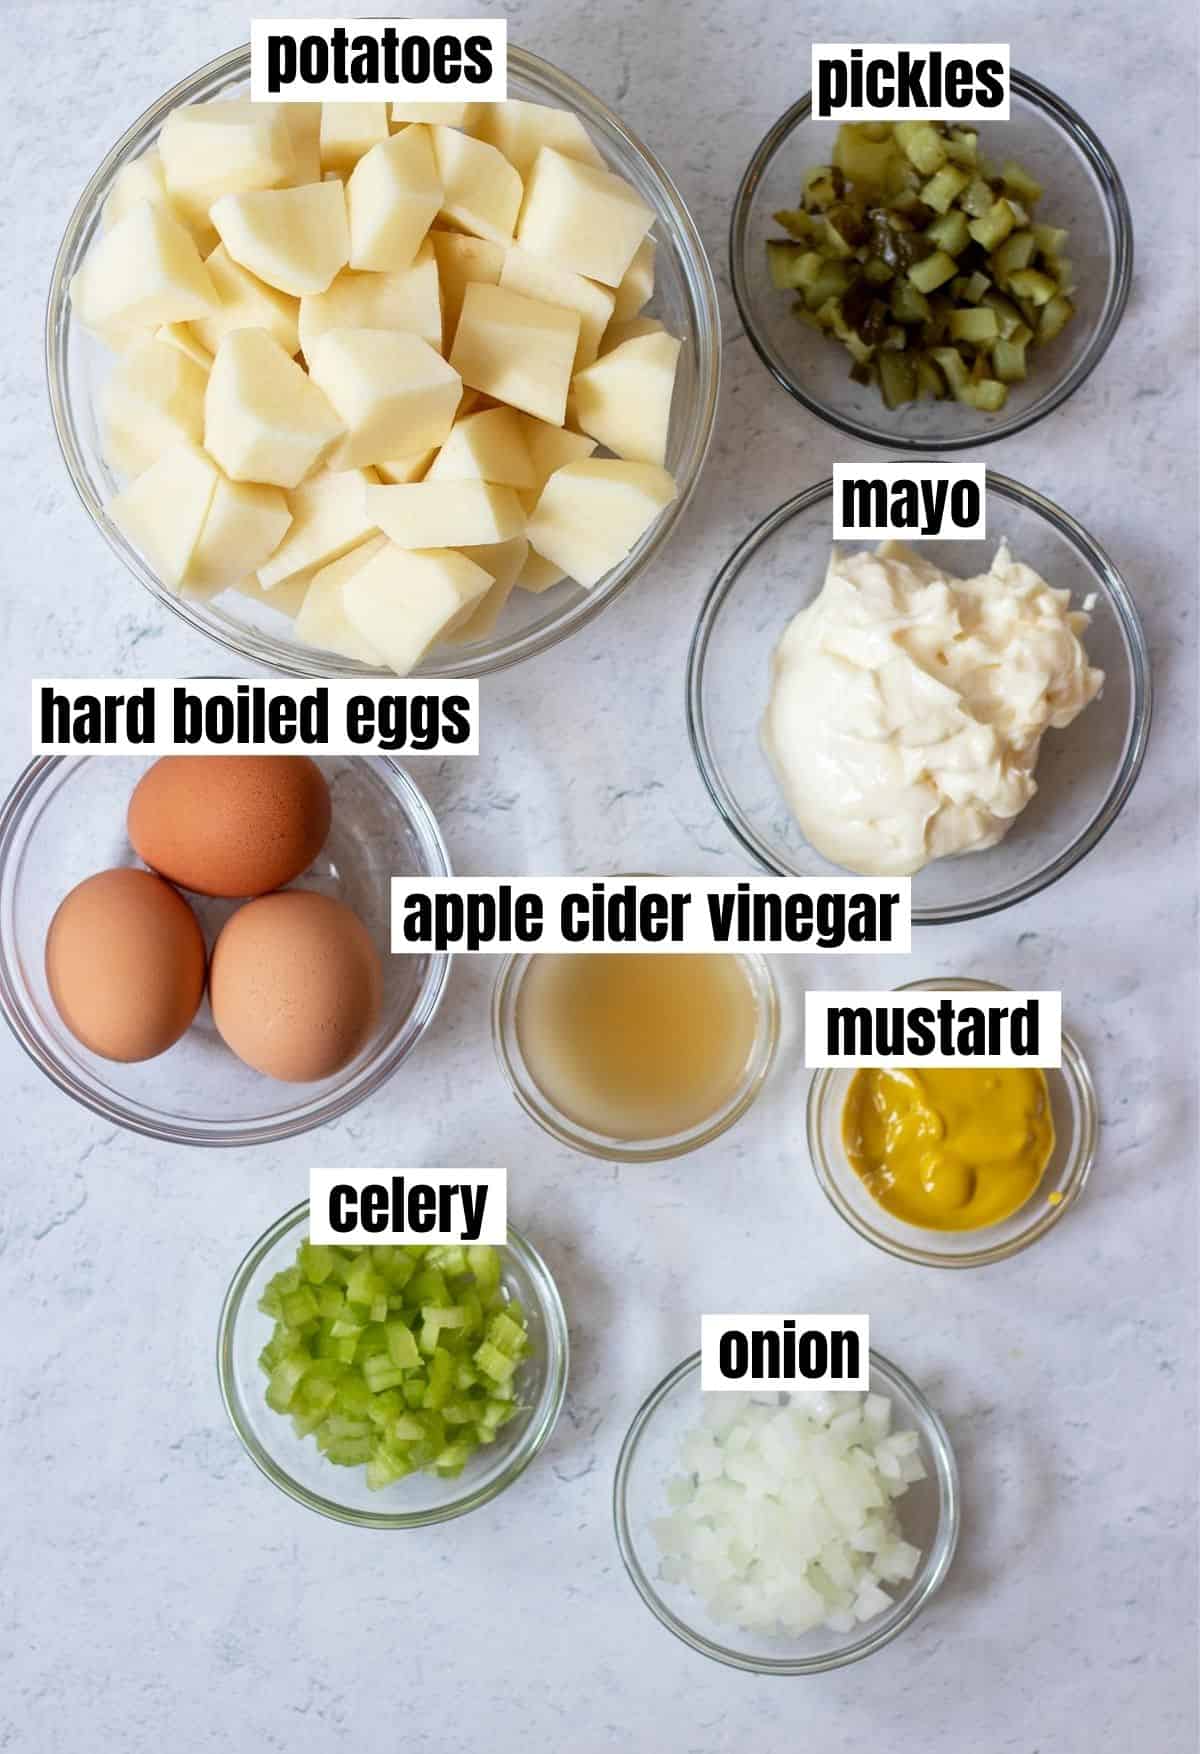 potatoes, pickles, hard boiled eggs, apple cider vinegar, mustard, celery, onion.